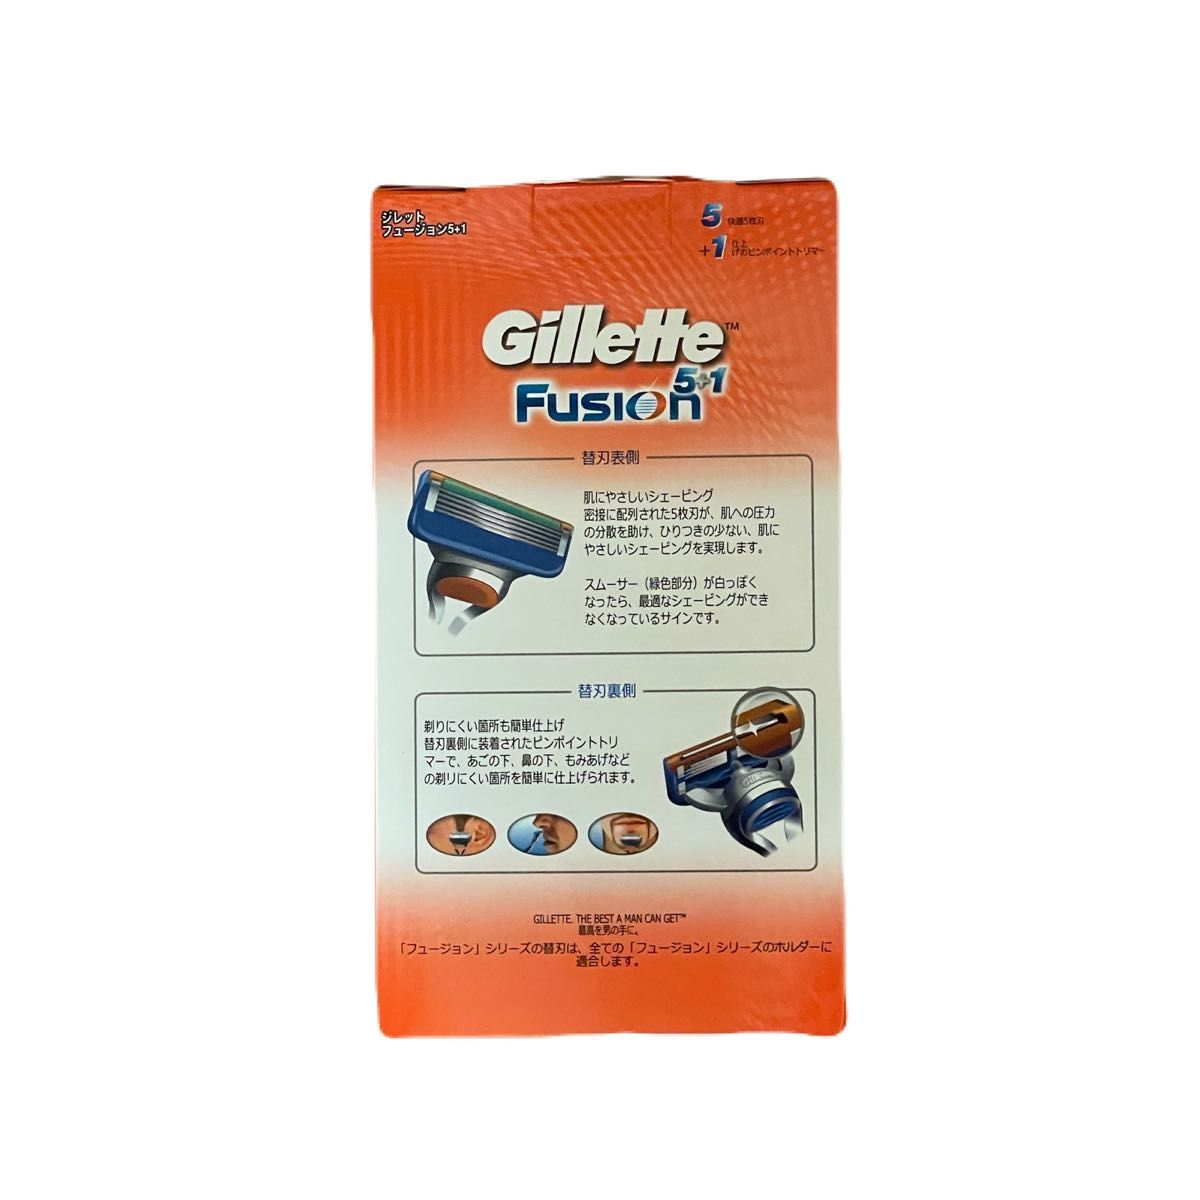 P&G ジレット フュージョン 本体ホルダー ＋ 替刃6コ付き Gillette Fusion 5+1